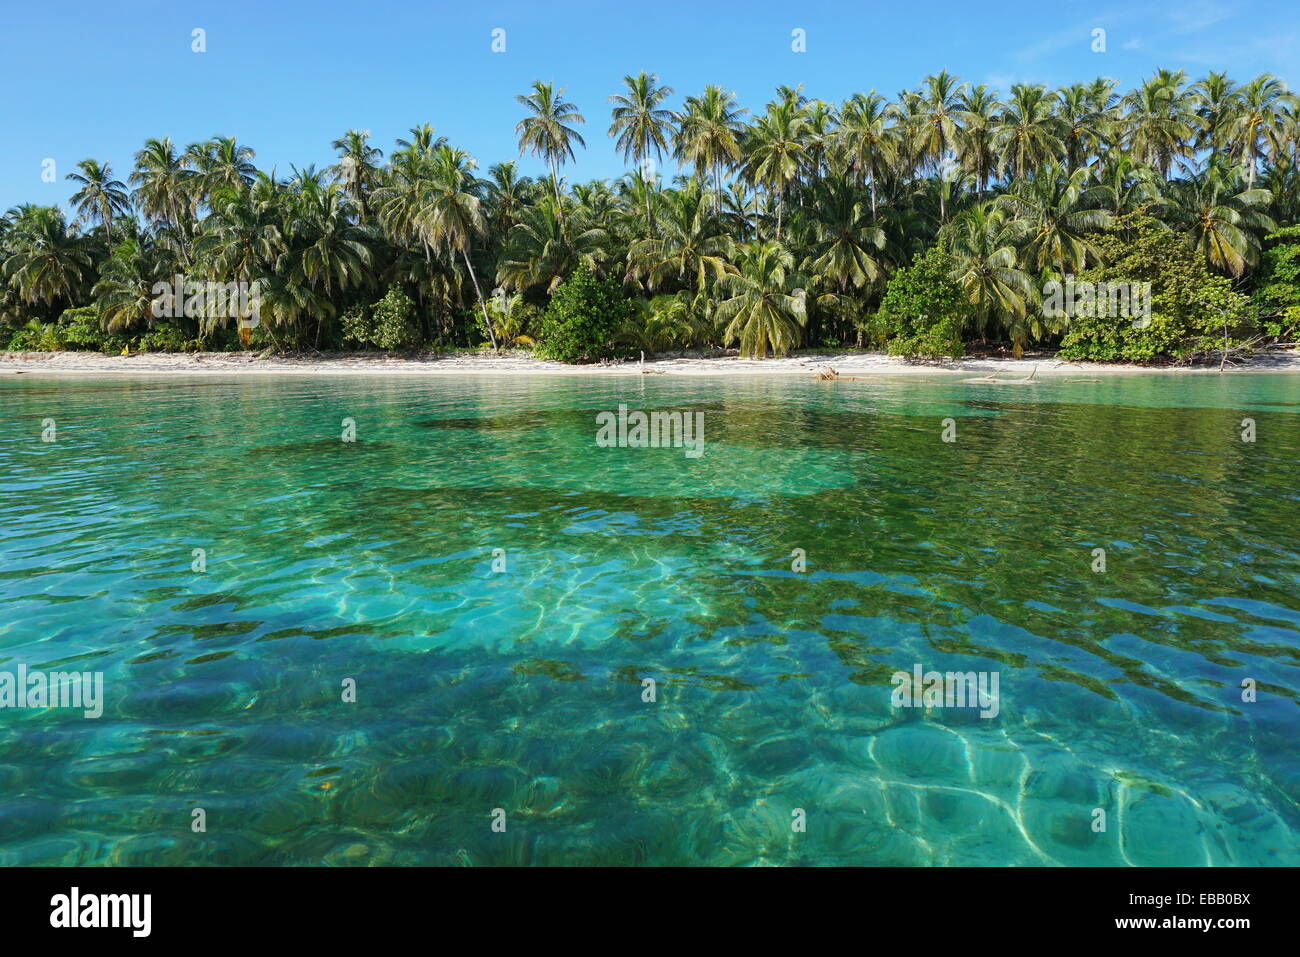 Plage des Caraïbes avec une végétation tropicale et d'eau claire, vue de la mer Banque D'Images